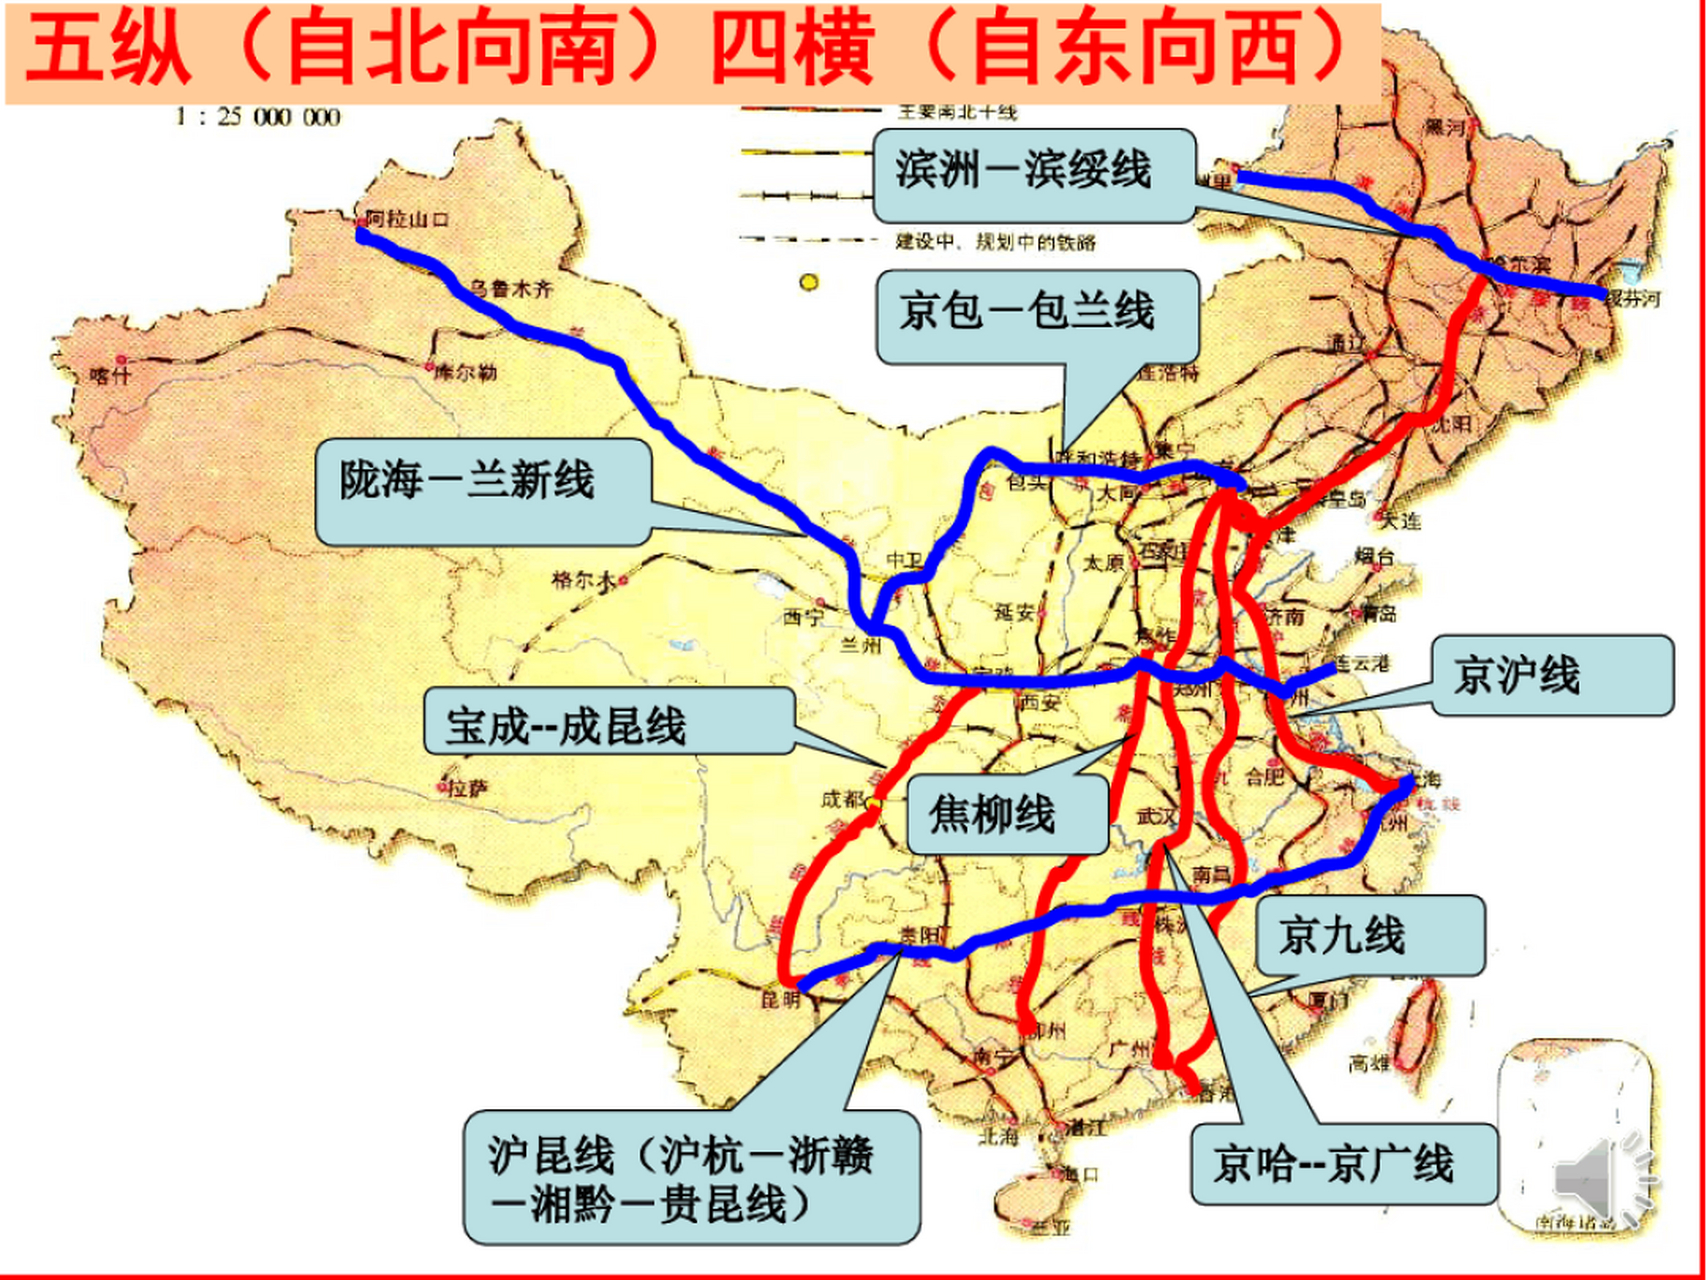 标题:中国十大铁路枢纽  1